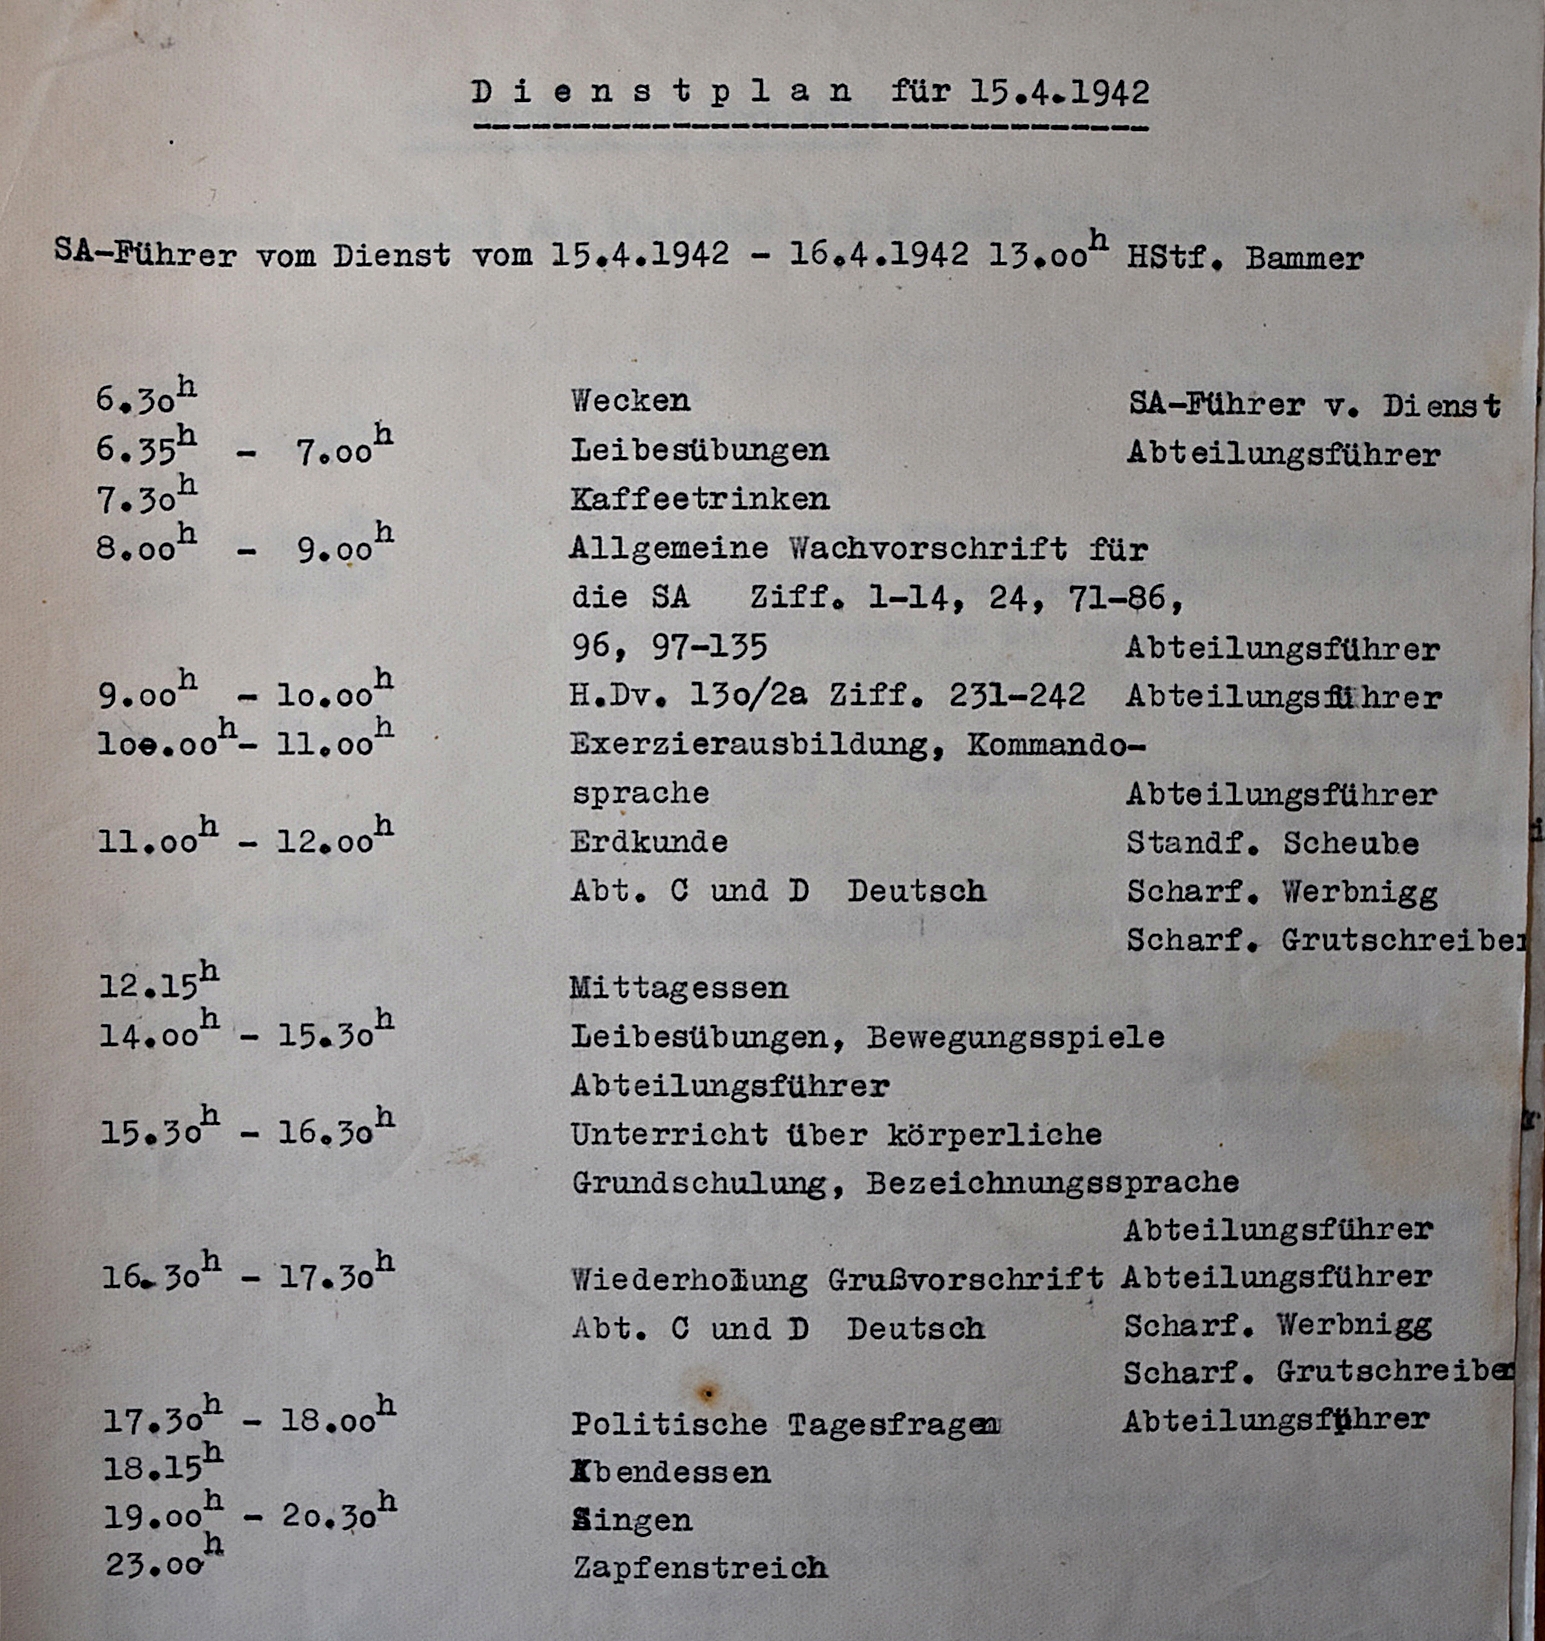 Slika 7: Primer dnevnega razporeda dela in aktivnosti za 15. april 1942 na grupni šoli vodij vermanšafta SHB v Rogaški Slatini. 